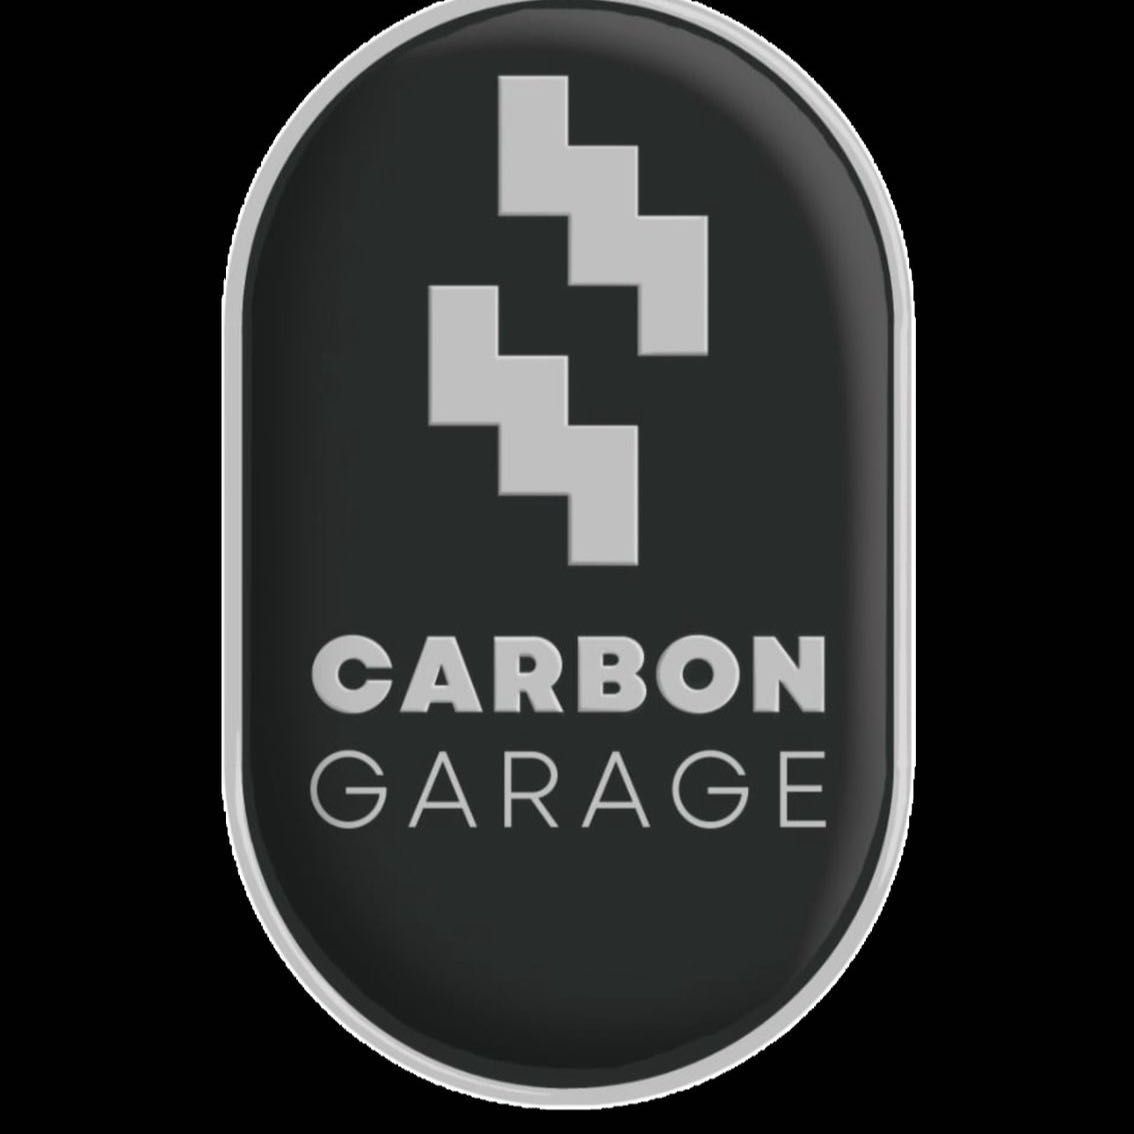 Carbon Garage, Avenida das Américas, 2250, Cobertura 302, 22640-101, Rio de Janeiro